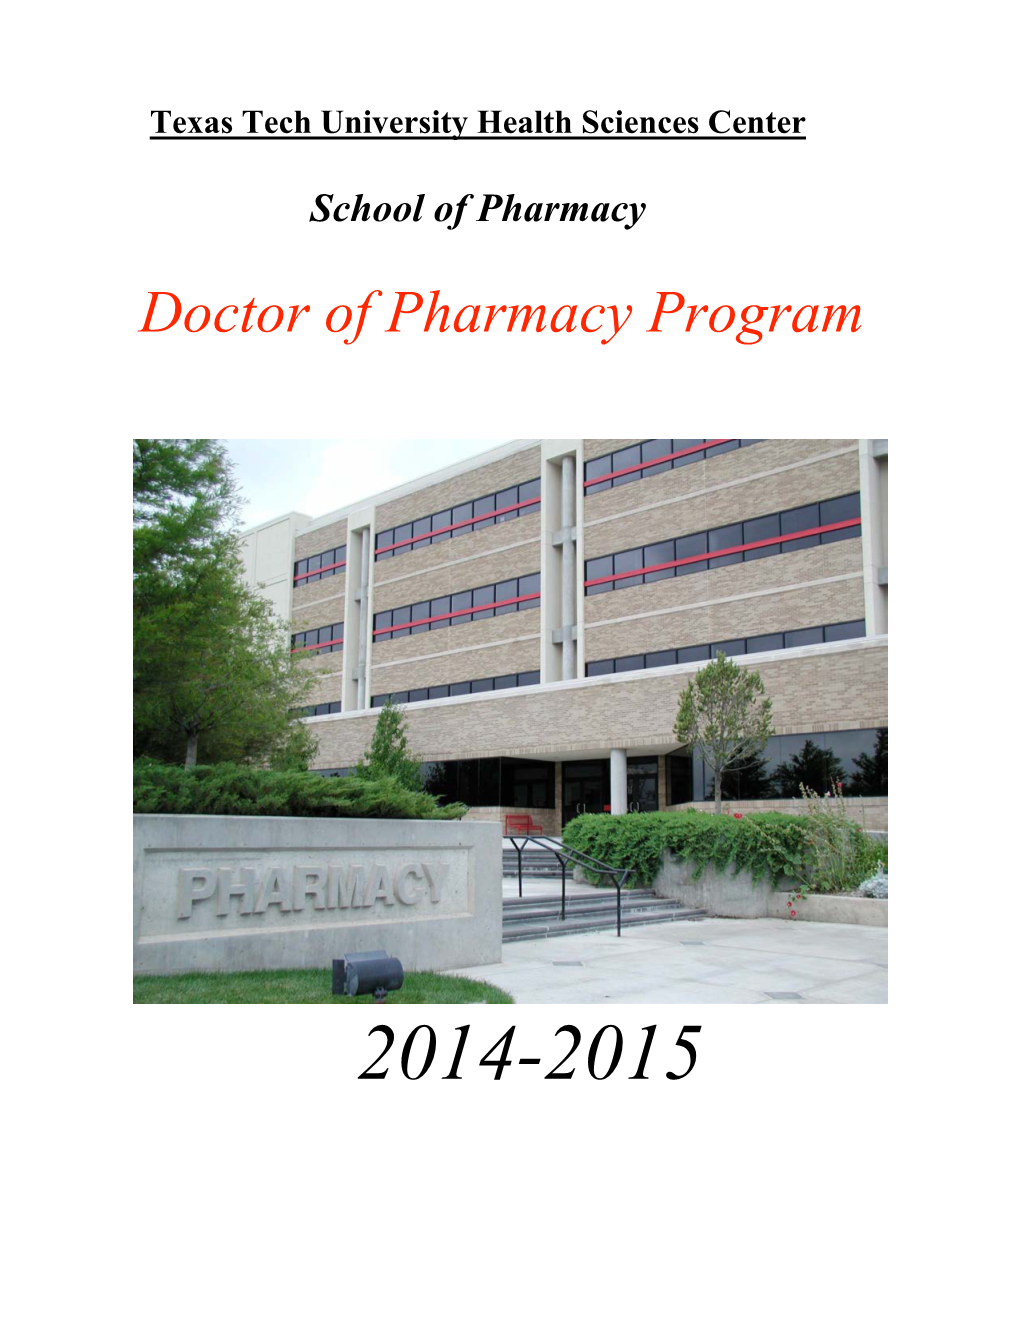 Doctor of Pharmacy Program